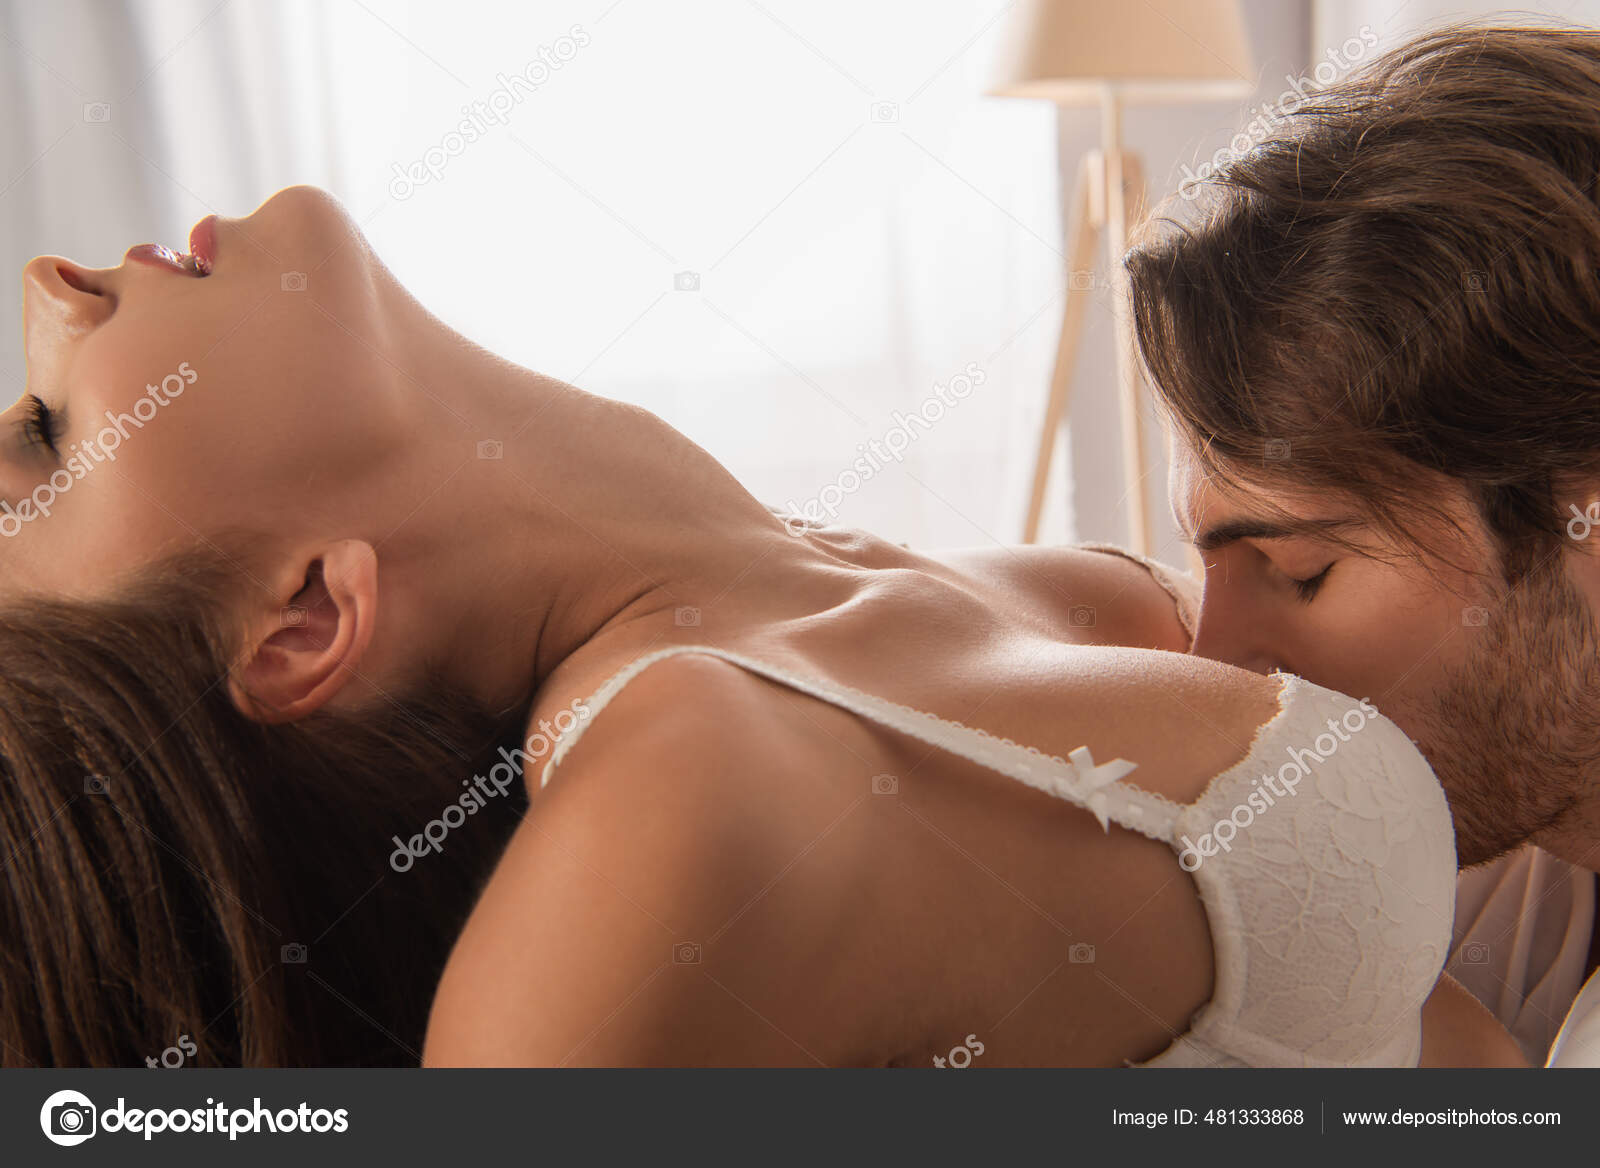 Breast kiss sexy